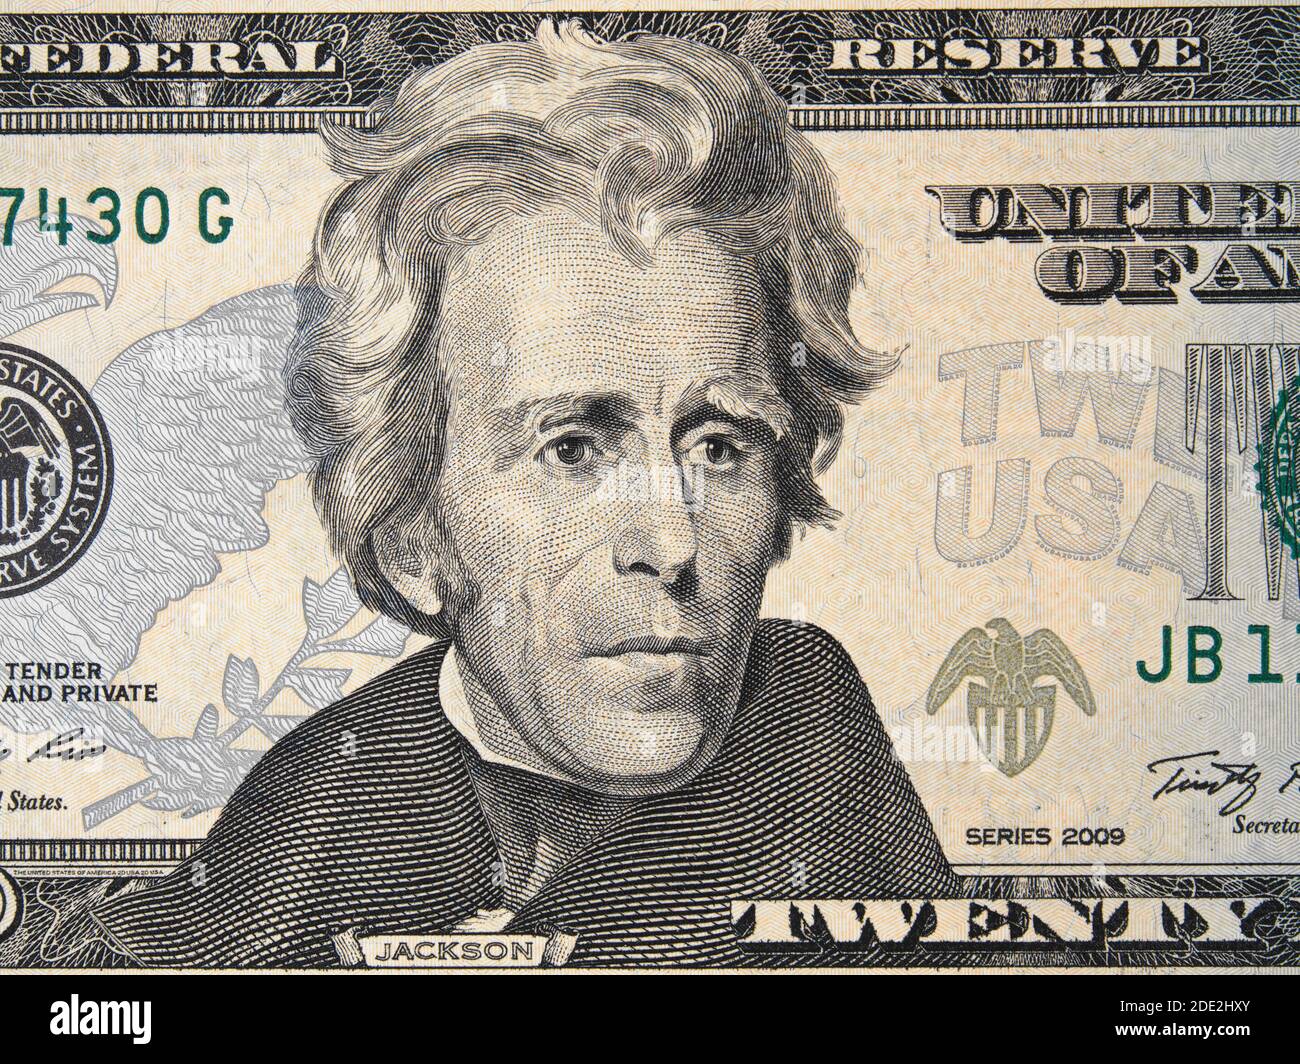 US-Präsident Andrew Jackson Gesicht auf USA zwanzig Dollar Rechnung Nahaufnahme, 20 usd, Vereinigte Staaten von Amerika Geld Nahaufnahme Stockfoto